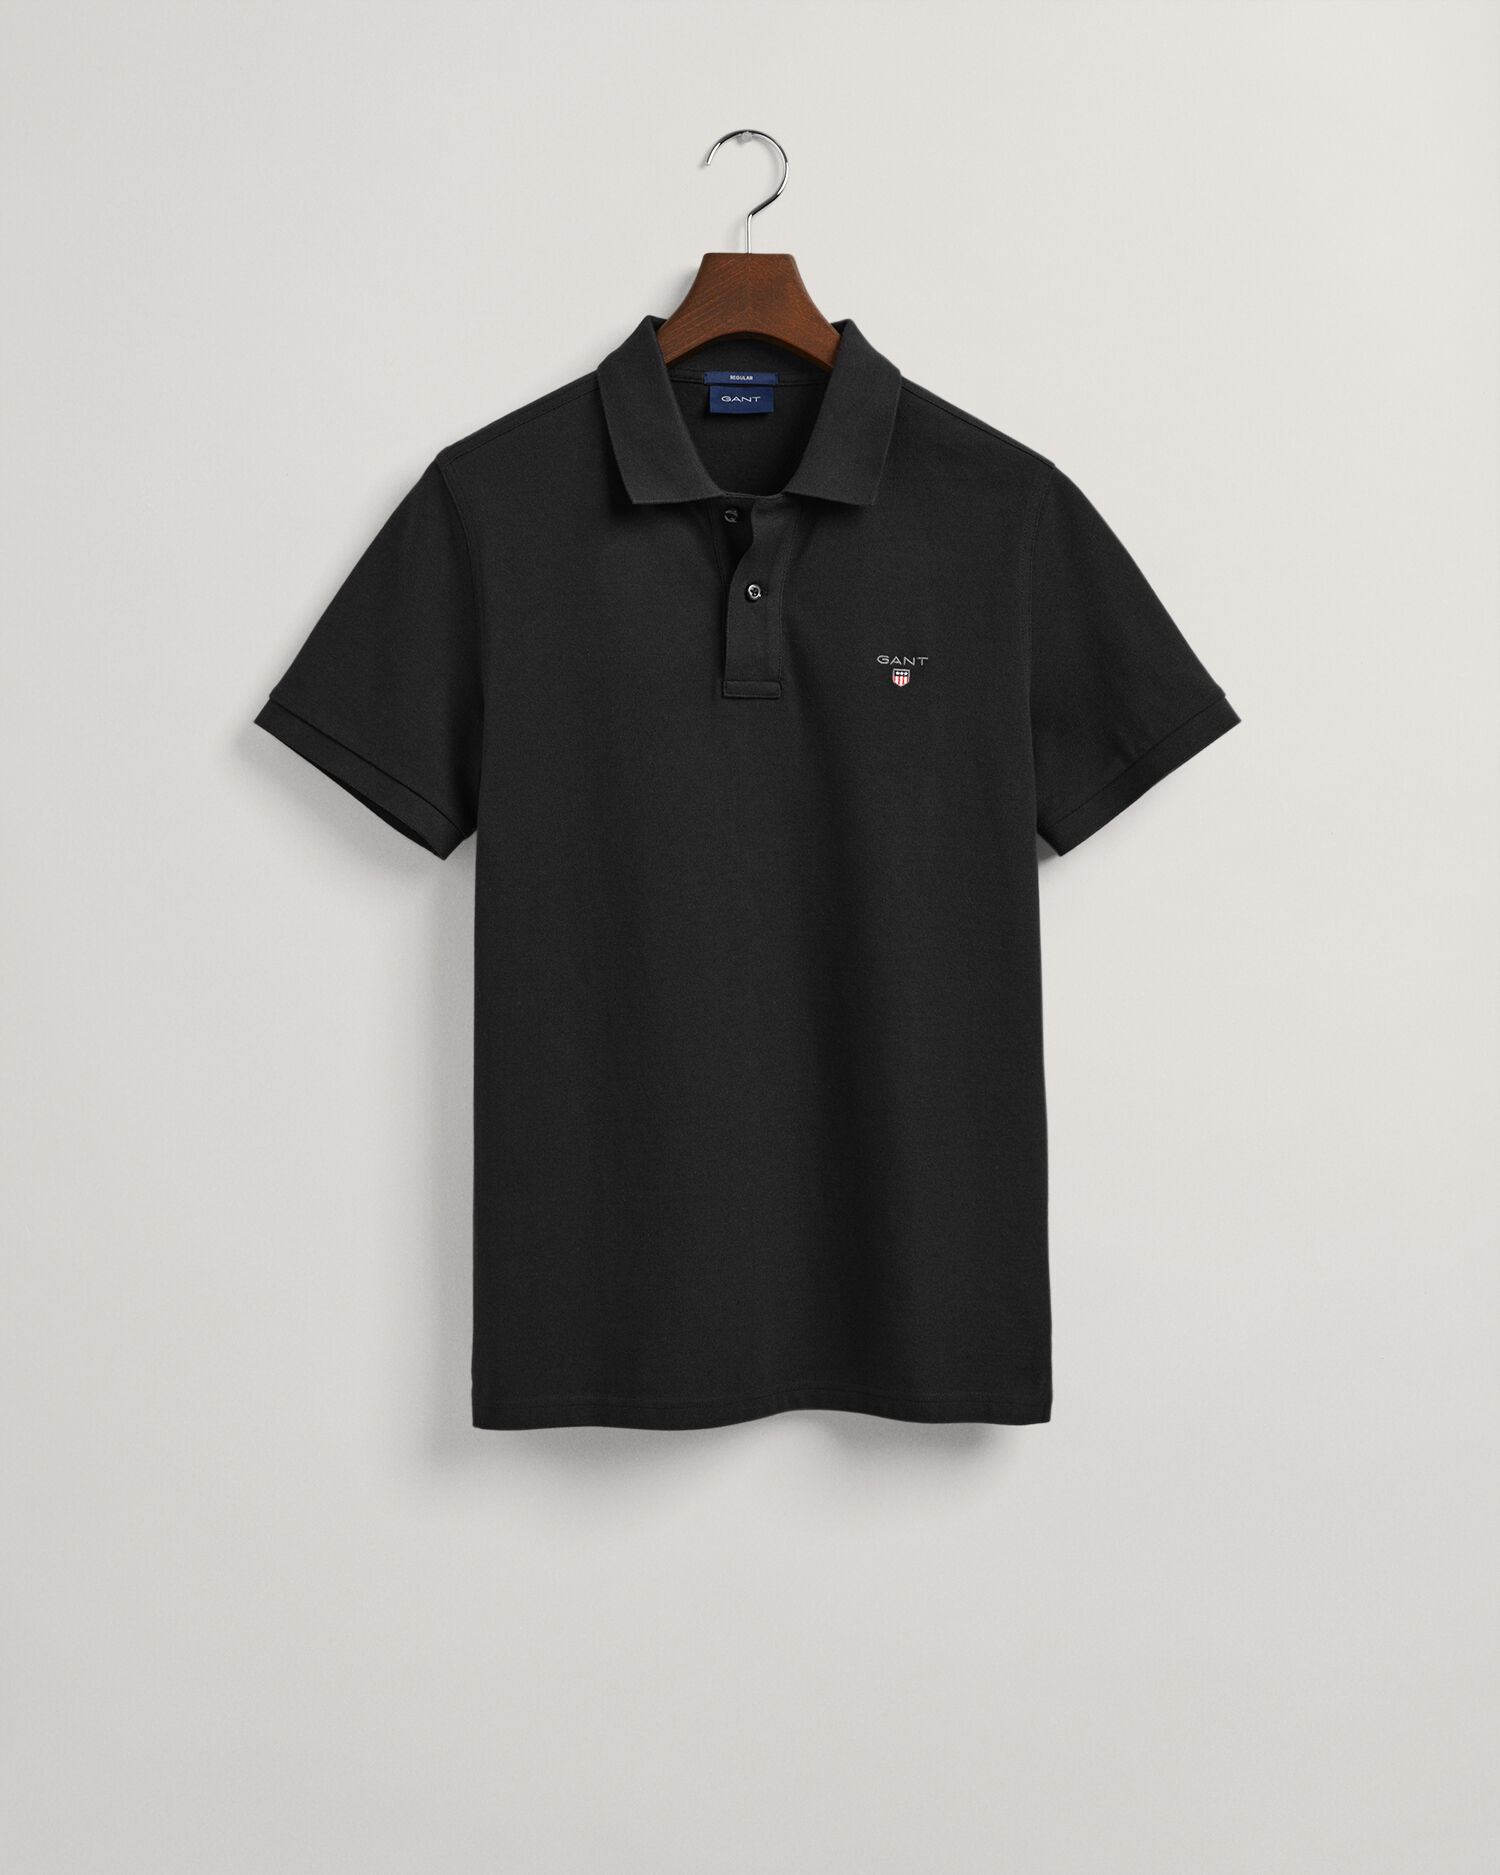 ガント メンズ ポロシャツ トップス Polo shirt - メンズファッション